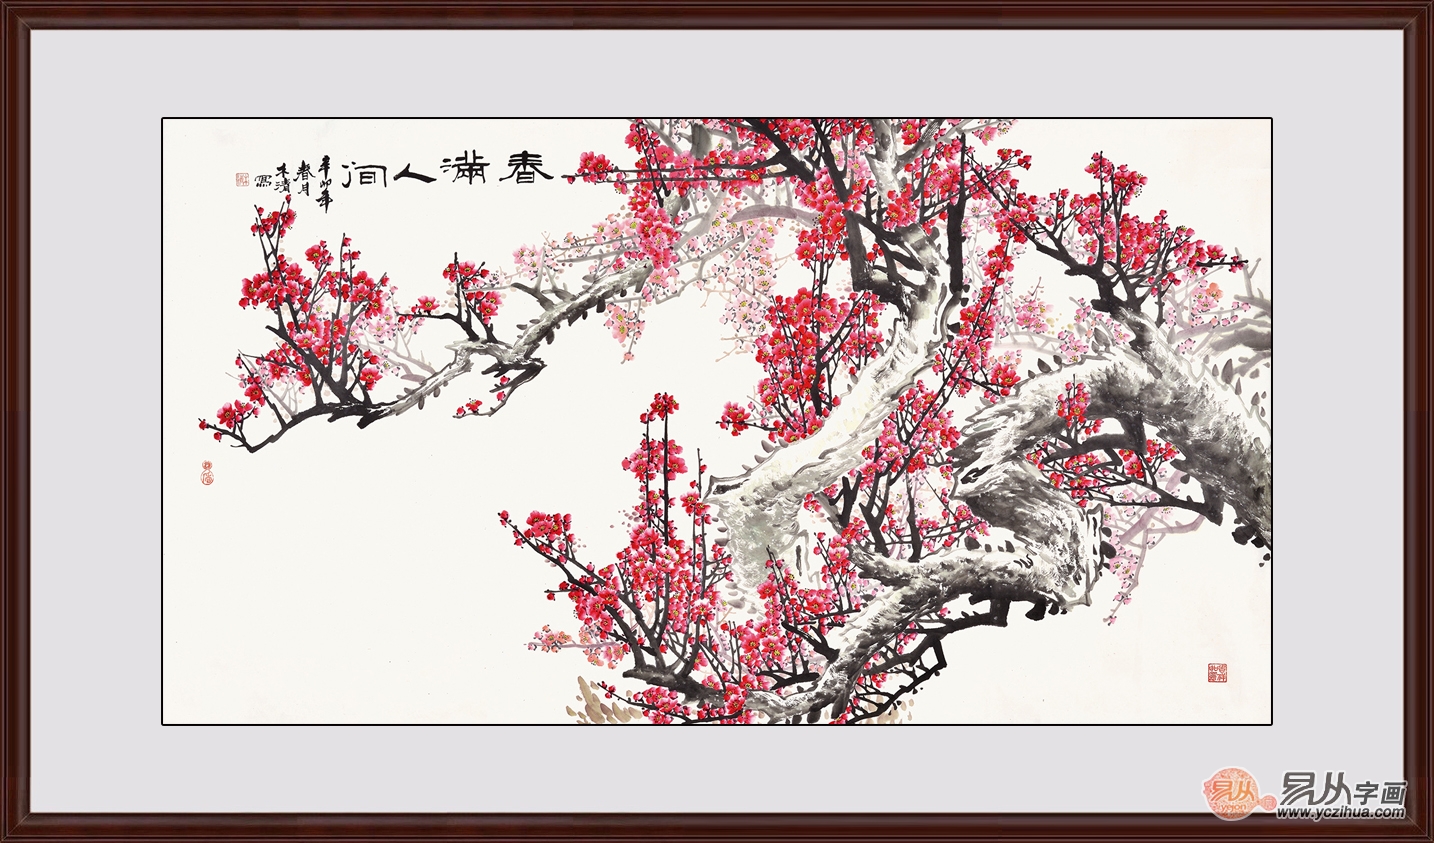 木清六尺横幅花鸟画作品梅花图《春满人间》